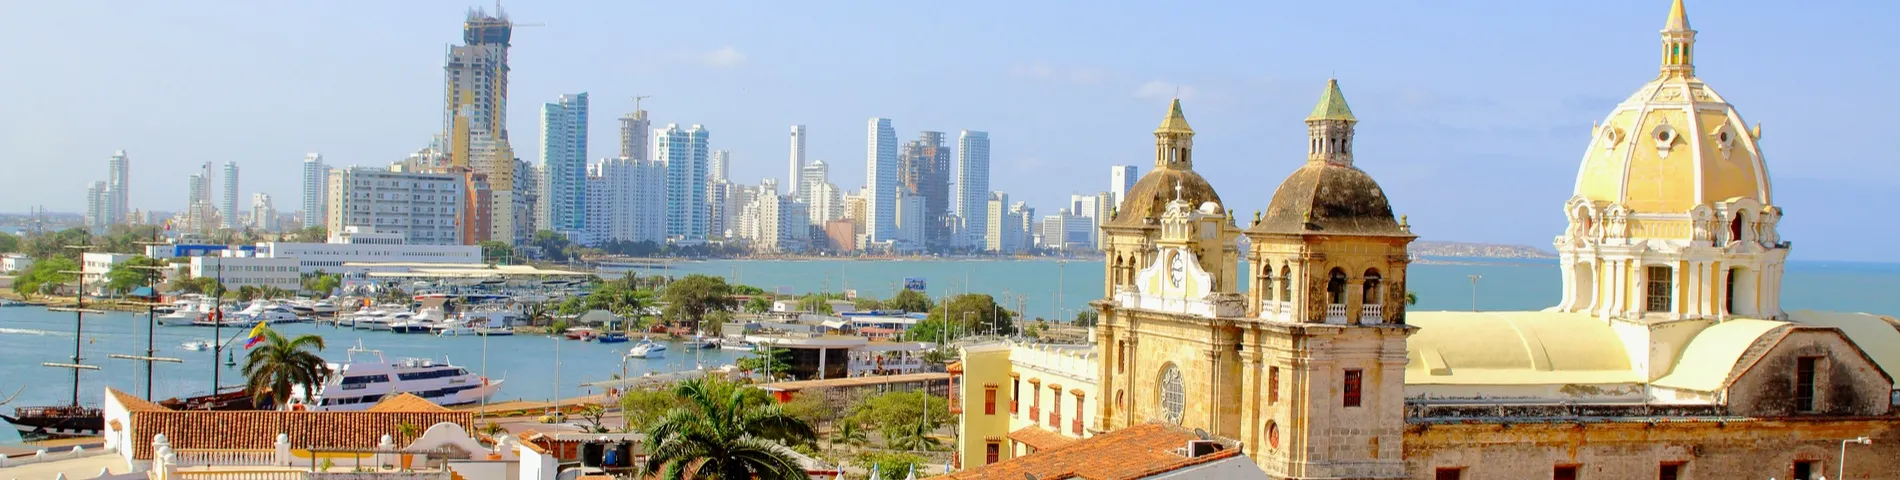 Cartagena - Standardkurs